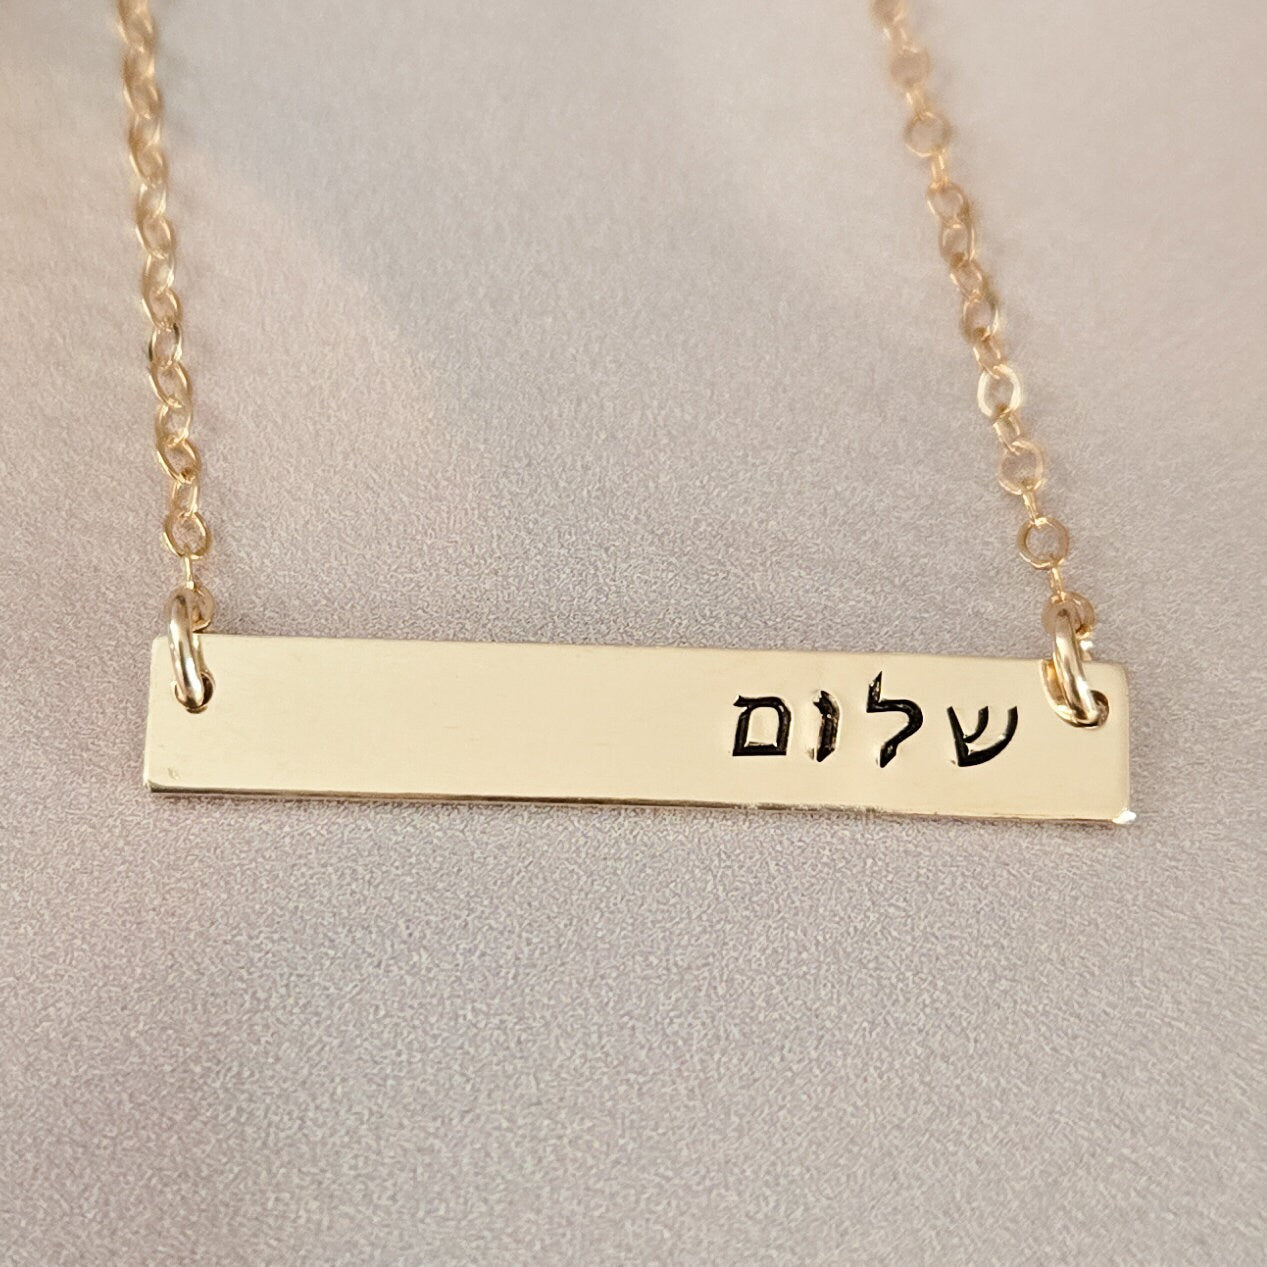 Custom Jewish Pride Jewelry for Her Salt and Sparkle